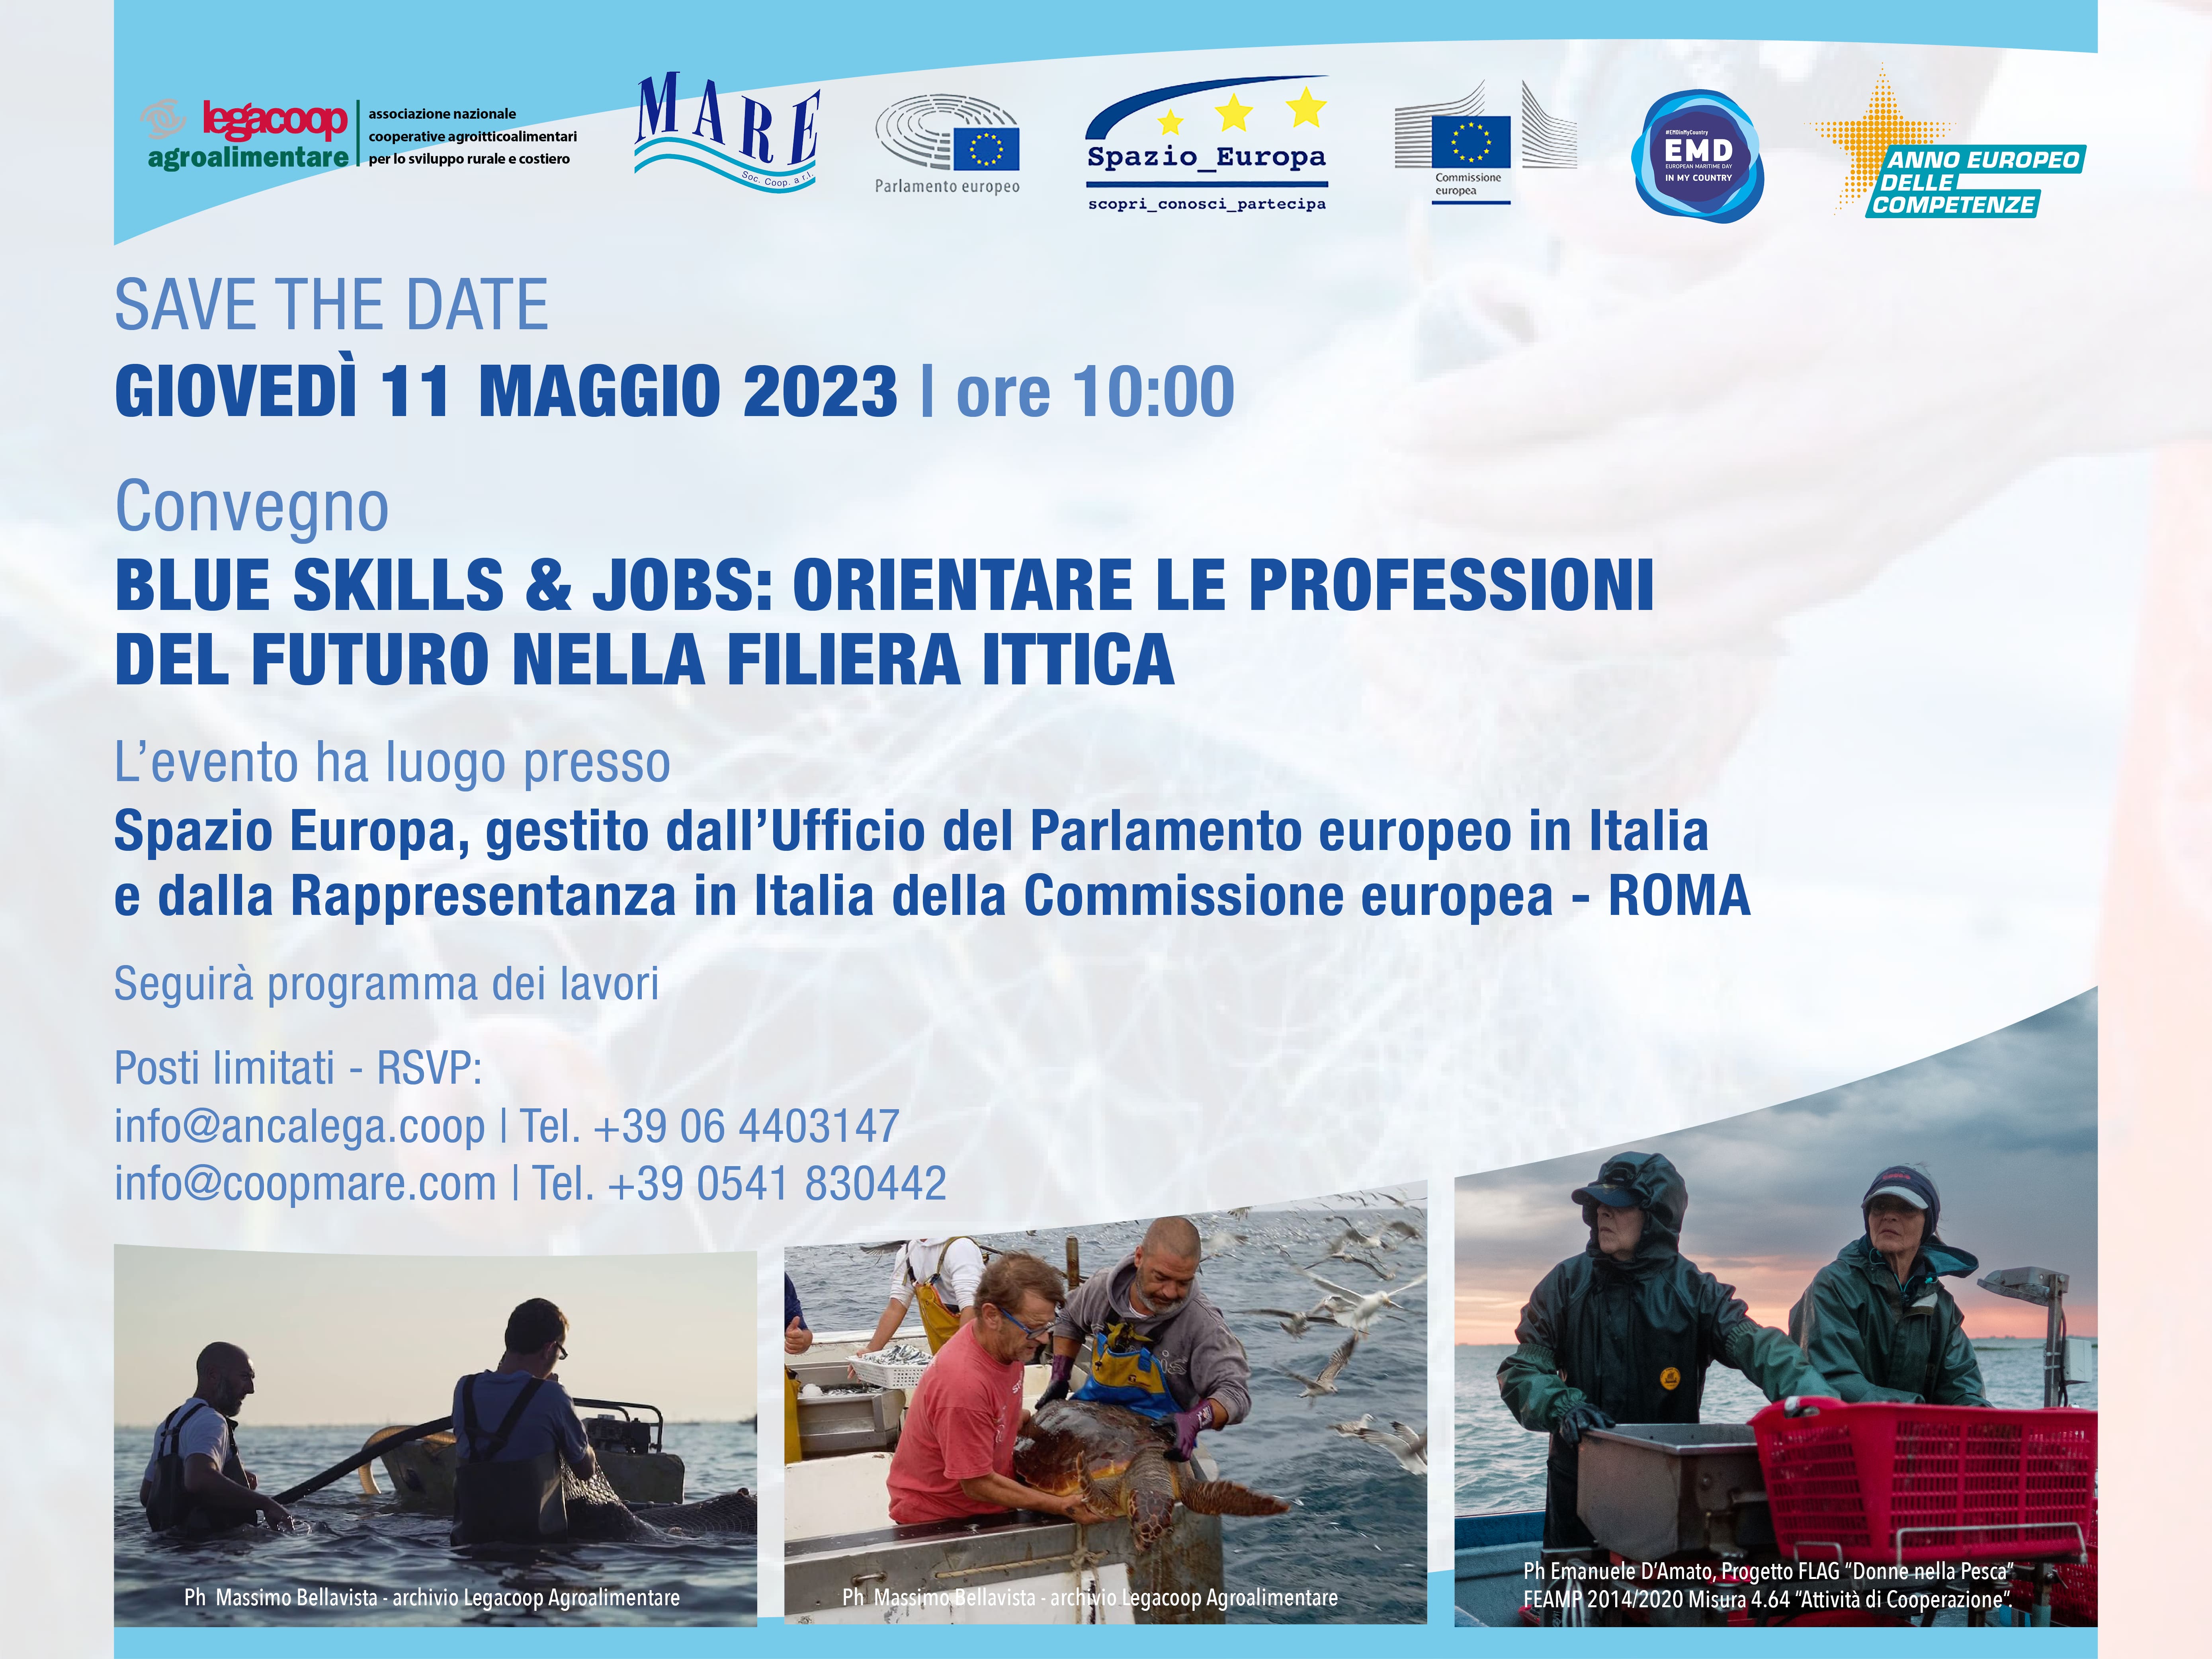 Pesca - Regolamento controlli da Europa via libera definitivo - Apprezzamento di Alleanza delle Cooperative Italiane per voto contrario dell